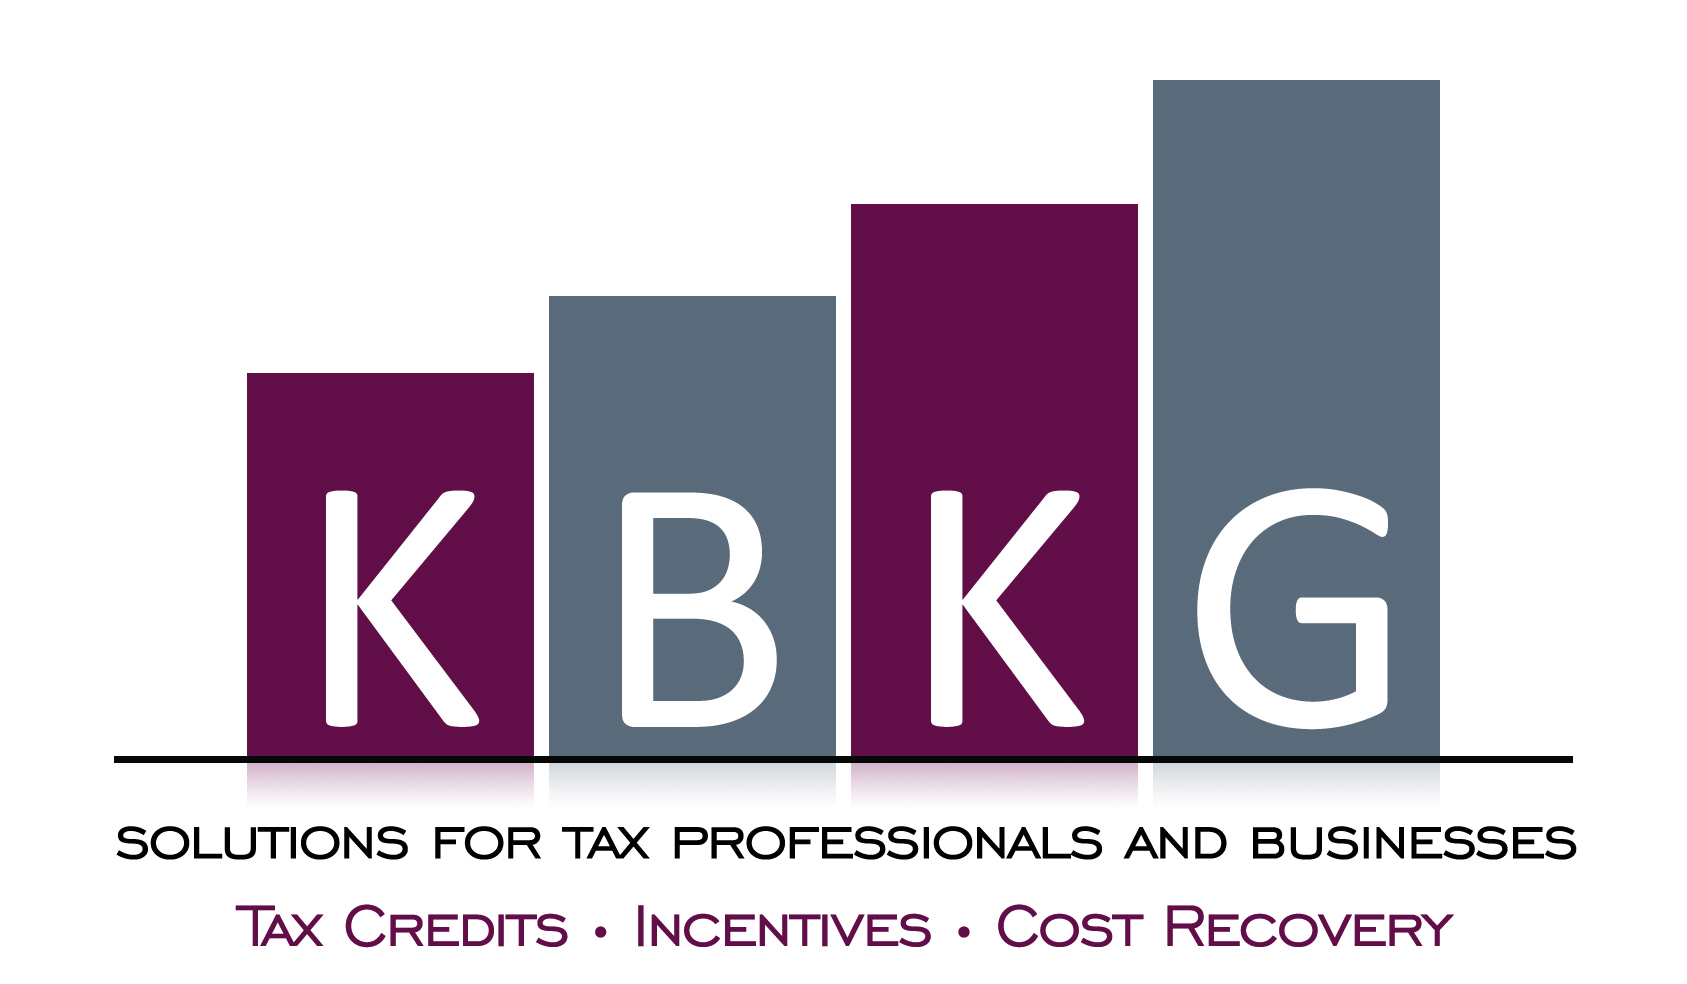 KBKG company logo